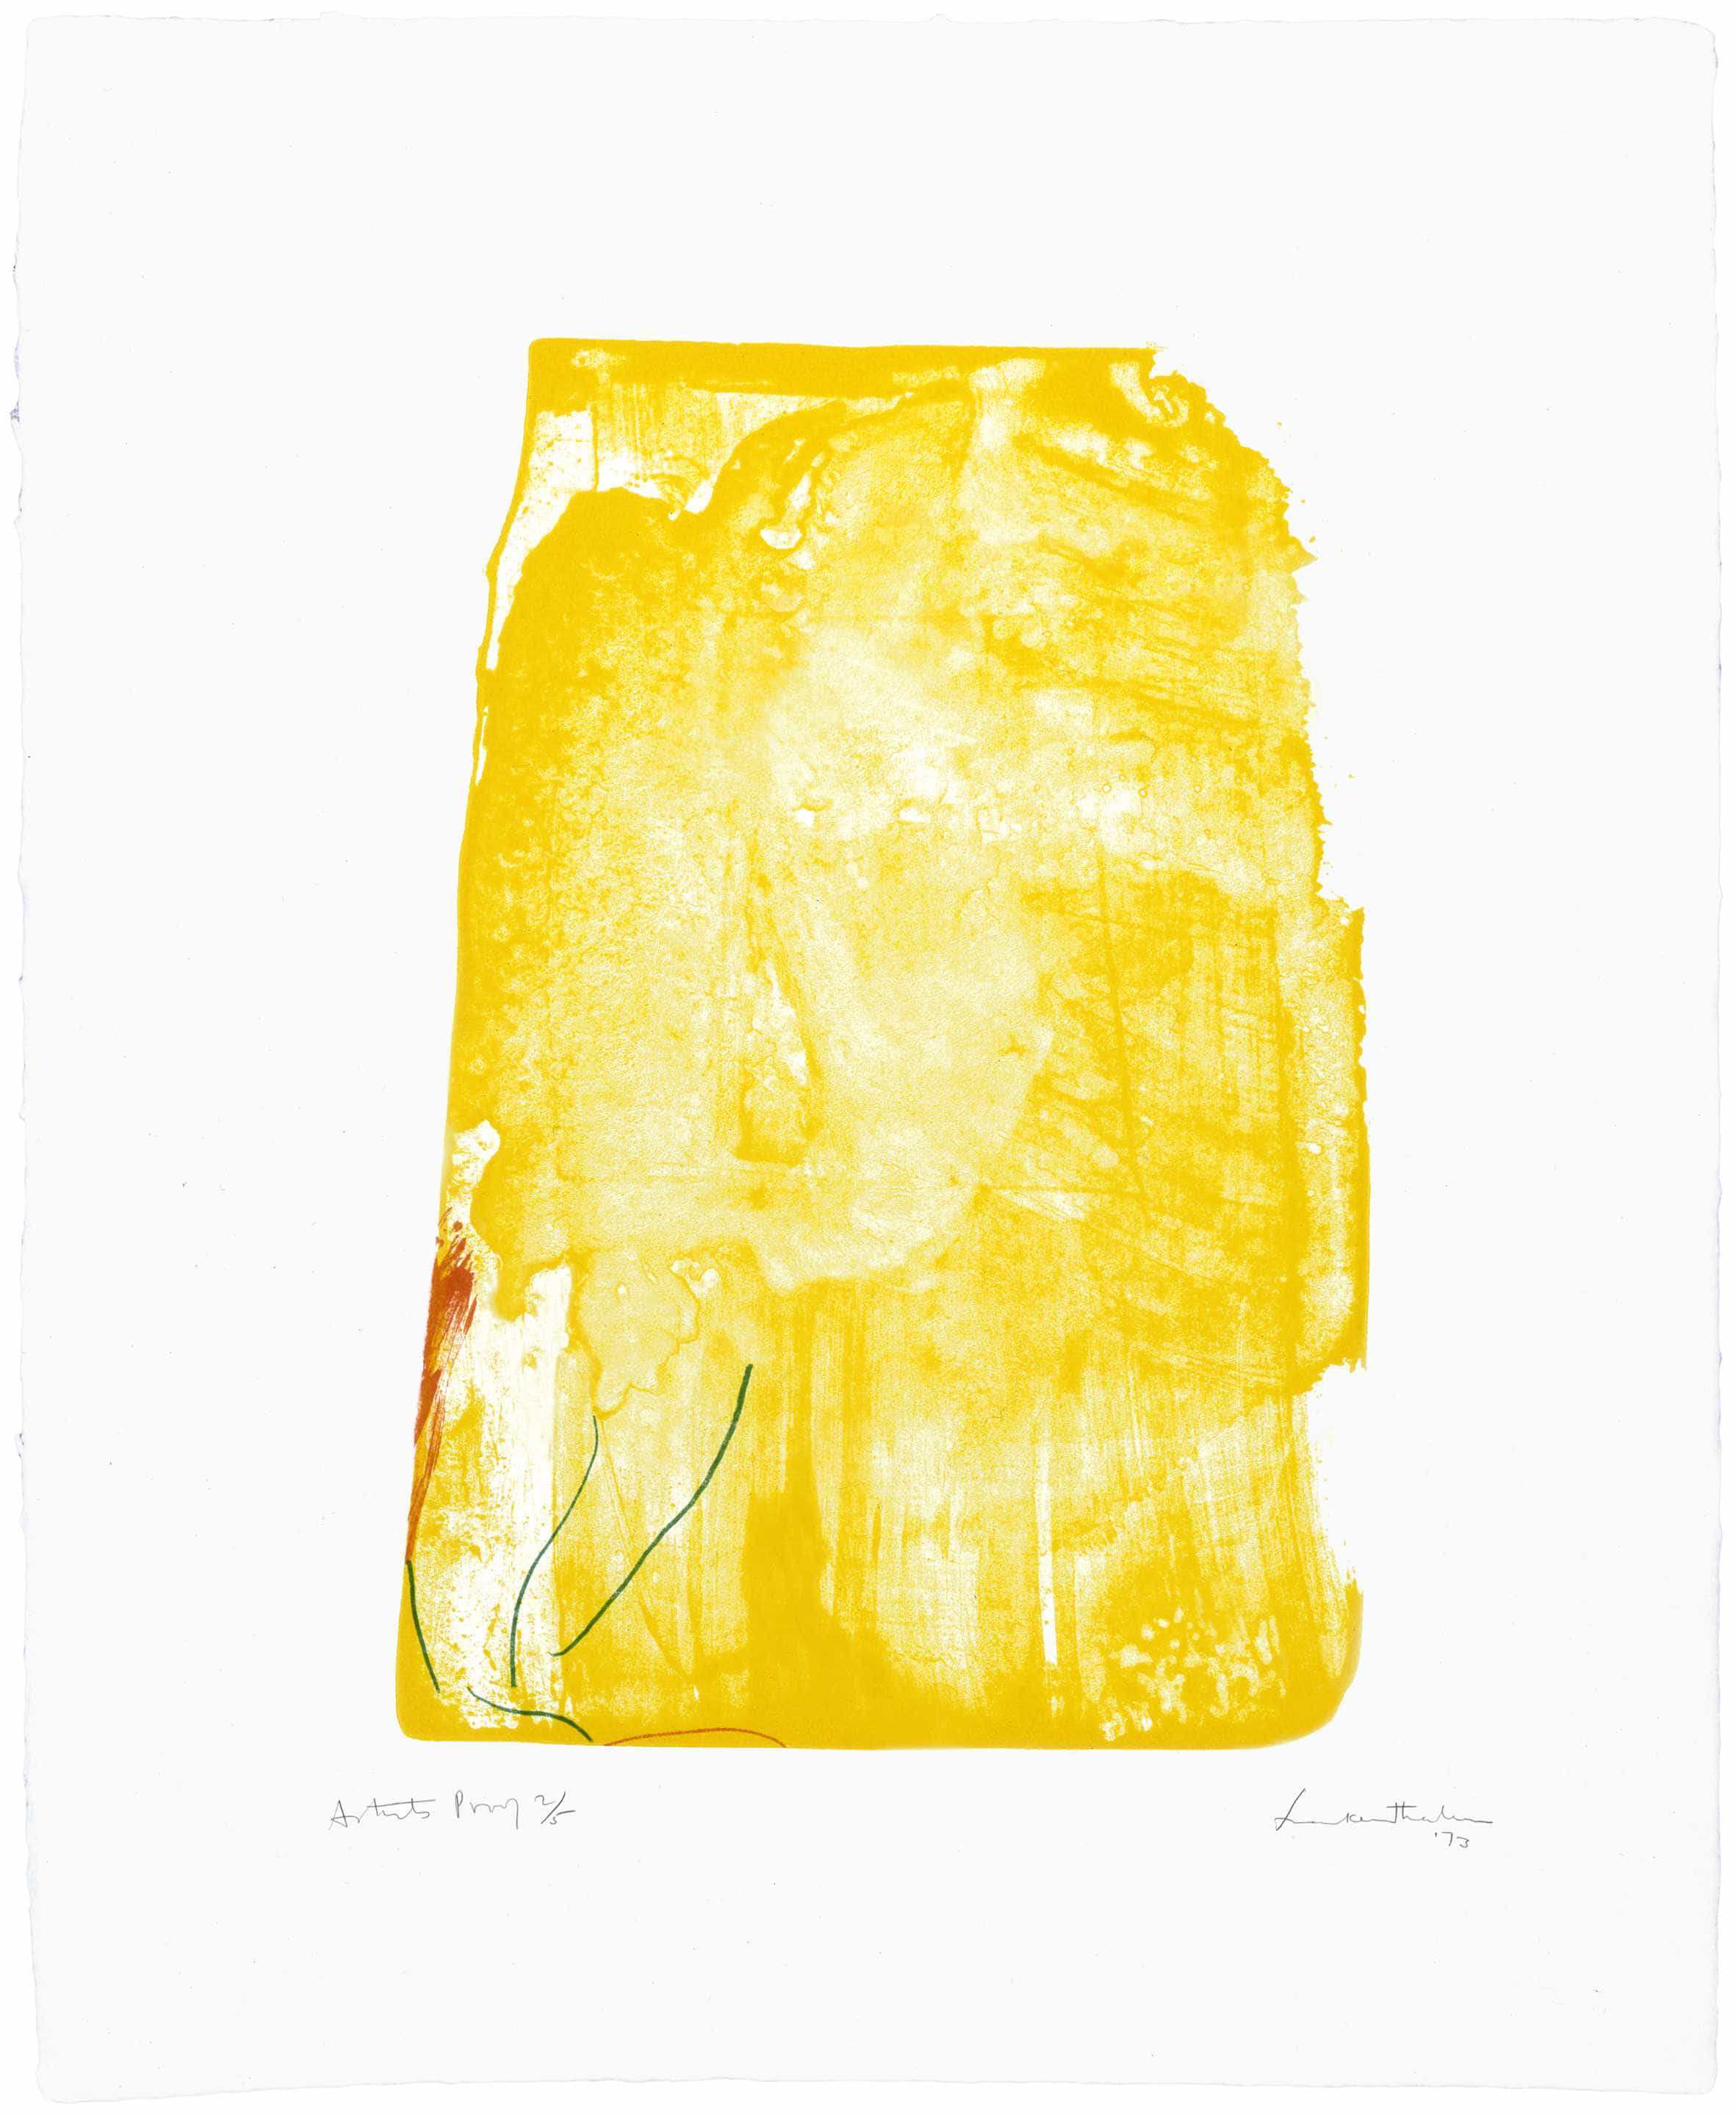 Helen Frankenthaler, I Need Yellow, 1972-73